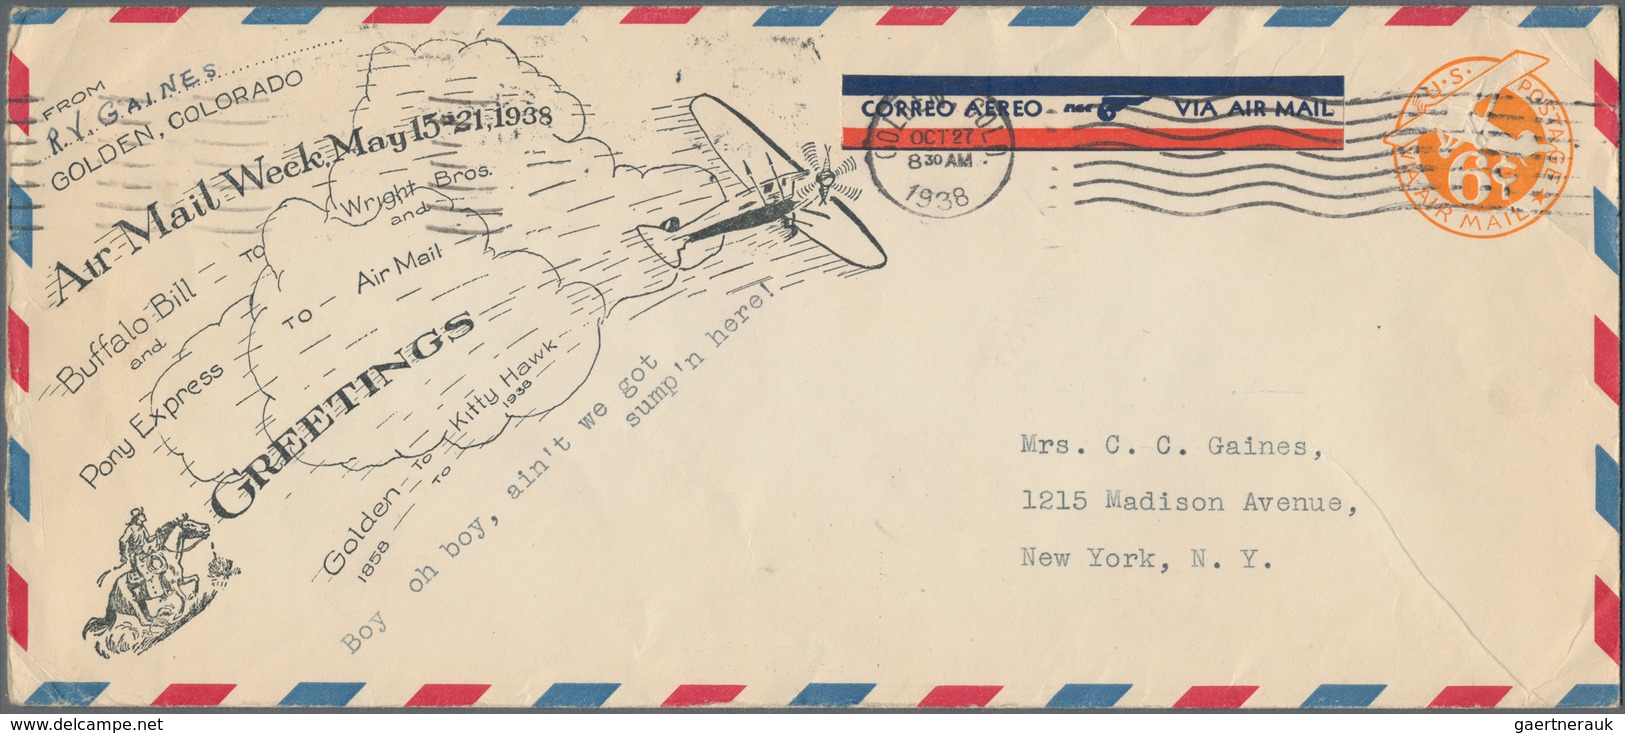 Vereinigte Staaten von Amerika - Militärpost / Feldpost: 1938/72 highly interesting accumulation of